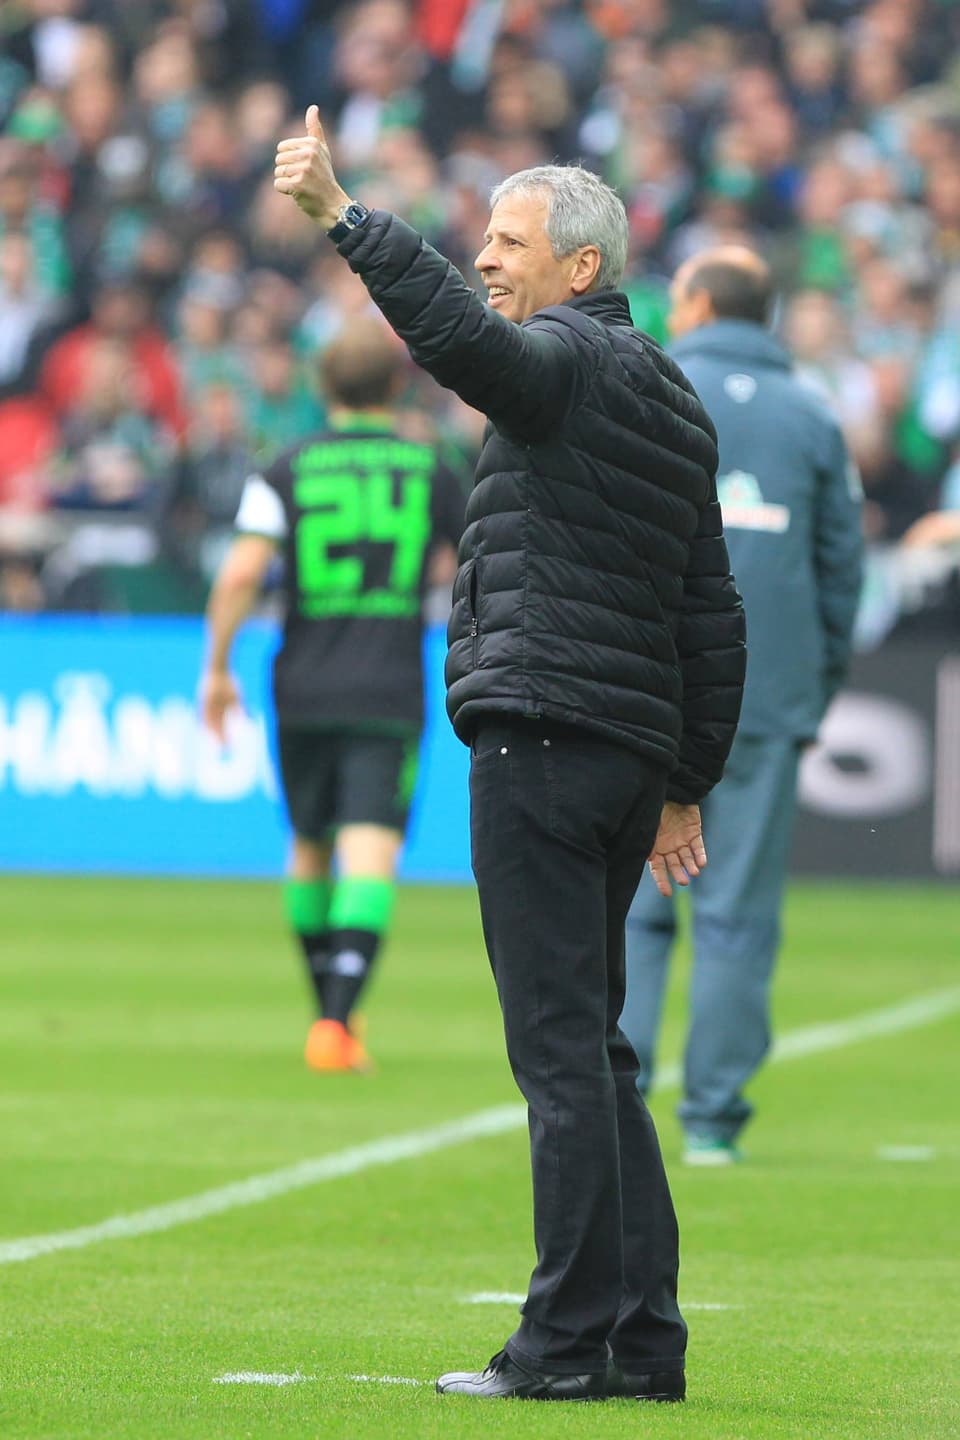 Mit einem 2:0 in Bremen sichert Gladbach am vorletzten Spielplatz Tabellenplatz drei und qualifiziert sich erstmals für die Champions League.